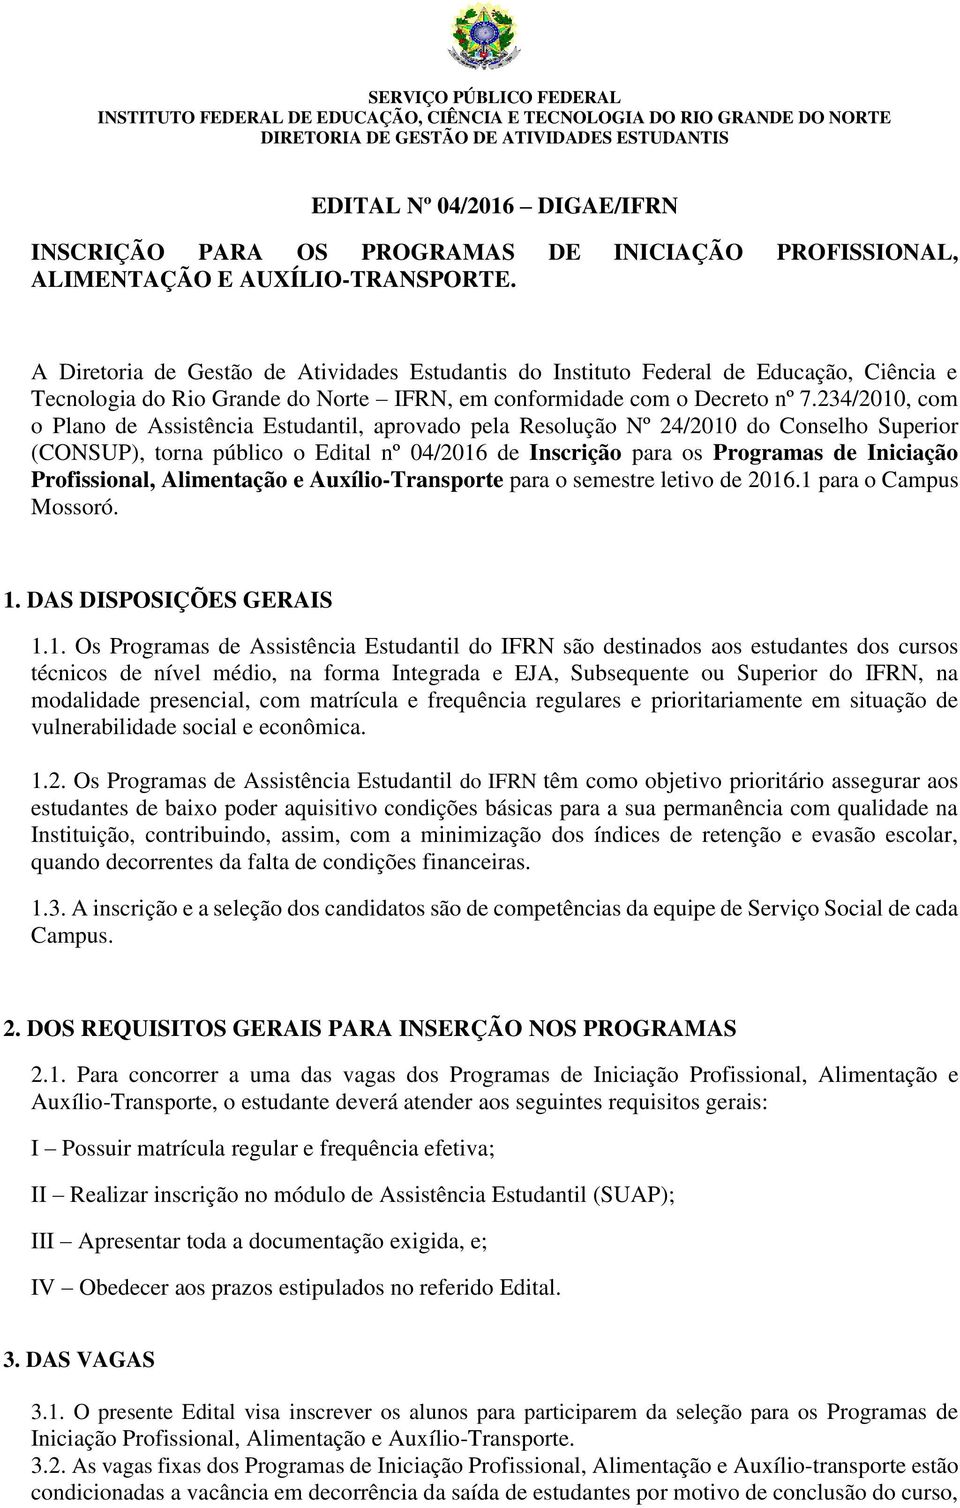 A Diretoria de Gestão de Atividades Estudantis do Instituto Federal de Educação, Ciência e Tecnologia do Rio Grande do Norte IFRN, em conformidade com o Decreto nº 7.